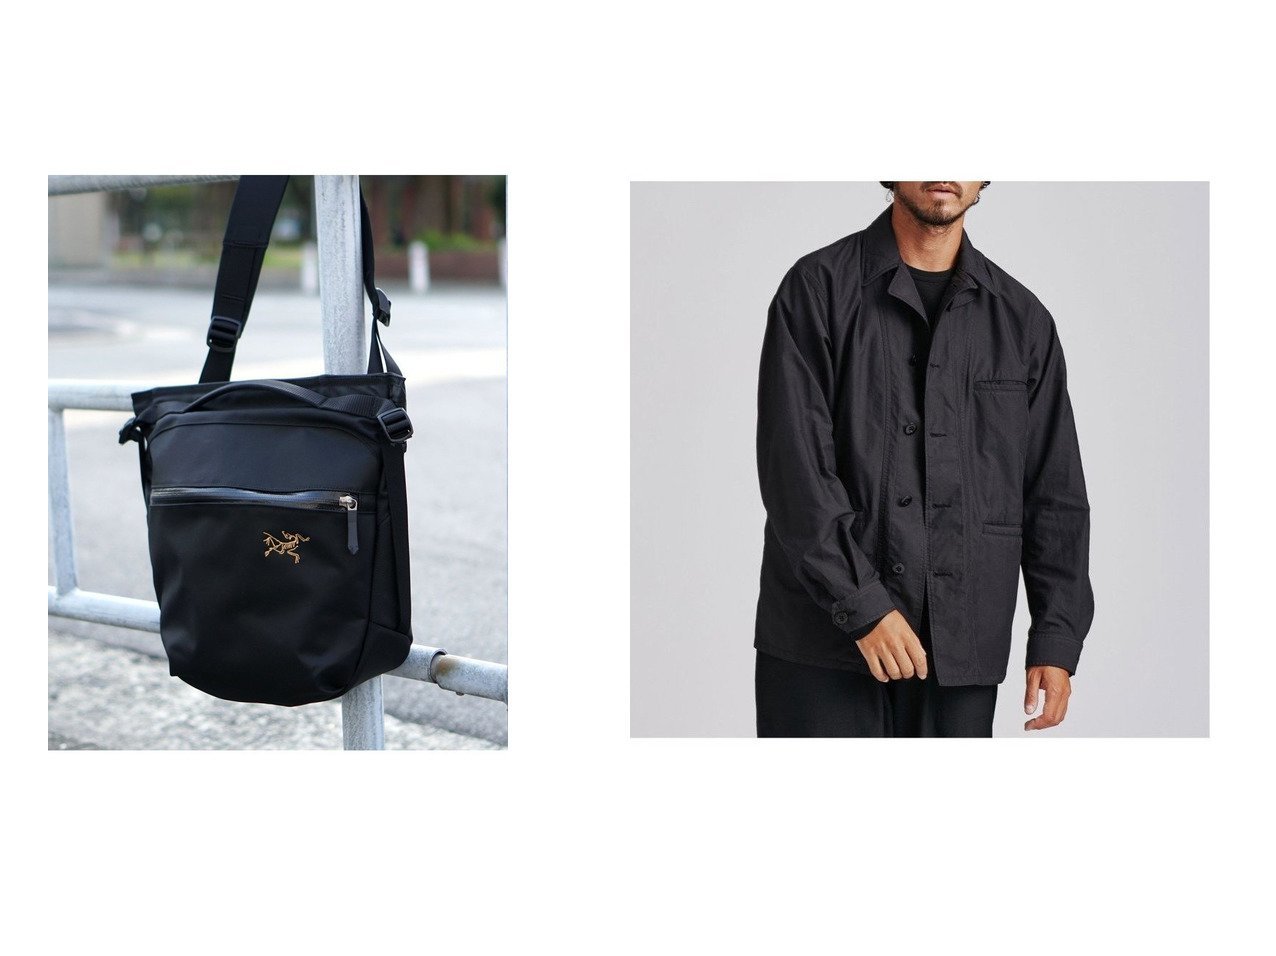 【nano universe / MEN/ナノ ユニバース】のNVy by nano universe M65ジャケット&【BEAMS / MEN/ビームス】のArro8 Shoulder bag 【MEN】男性のおすすめ！人気、メンズファッションの通販 おすすめで人気のファッション通販商品 インテリア・家具・キッズファッション・メンズファッション・レディースファッション・服の通販 founy(ファニー) https://founy.com/ ファッション Fashion メンズ MEN バッグ Bag Men ヴィンテージ コレクション シンプル ジャケット スタイリッシュ センター フロント ブルゾン ミリタリー モダン ワーク アウトドア ジップ ポケット リュック ワンポイント |ID:crp329100000005673